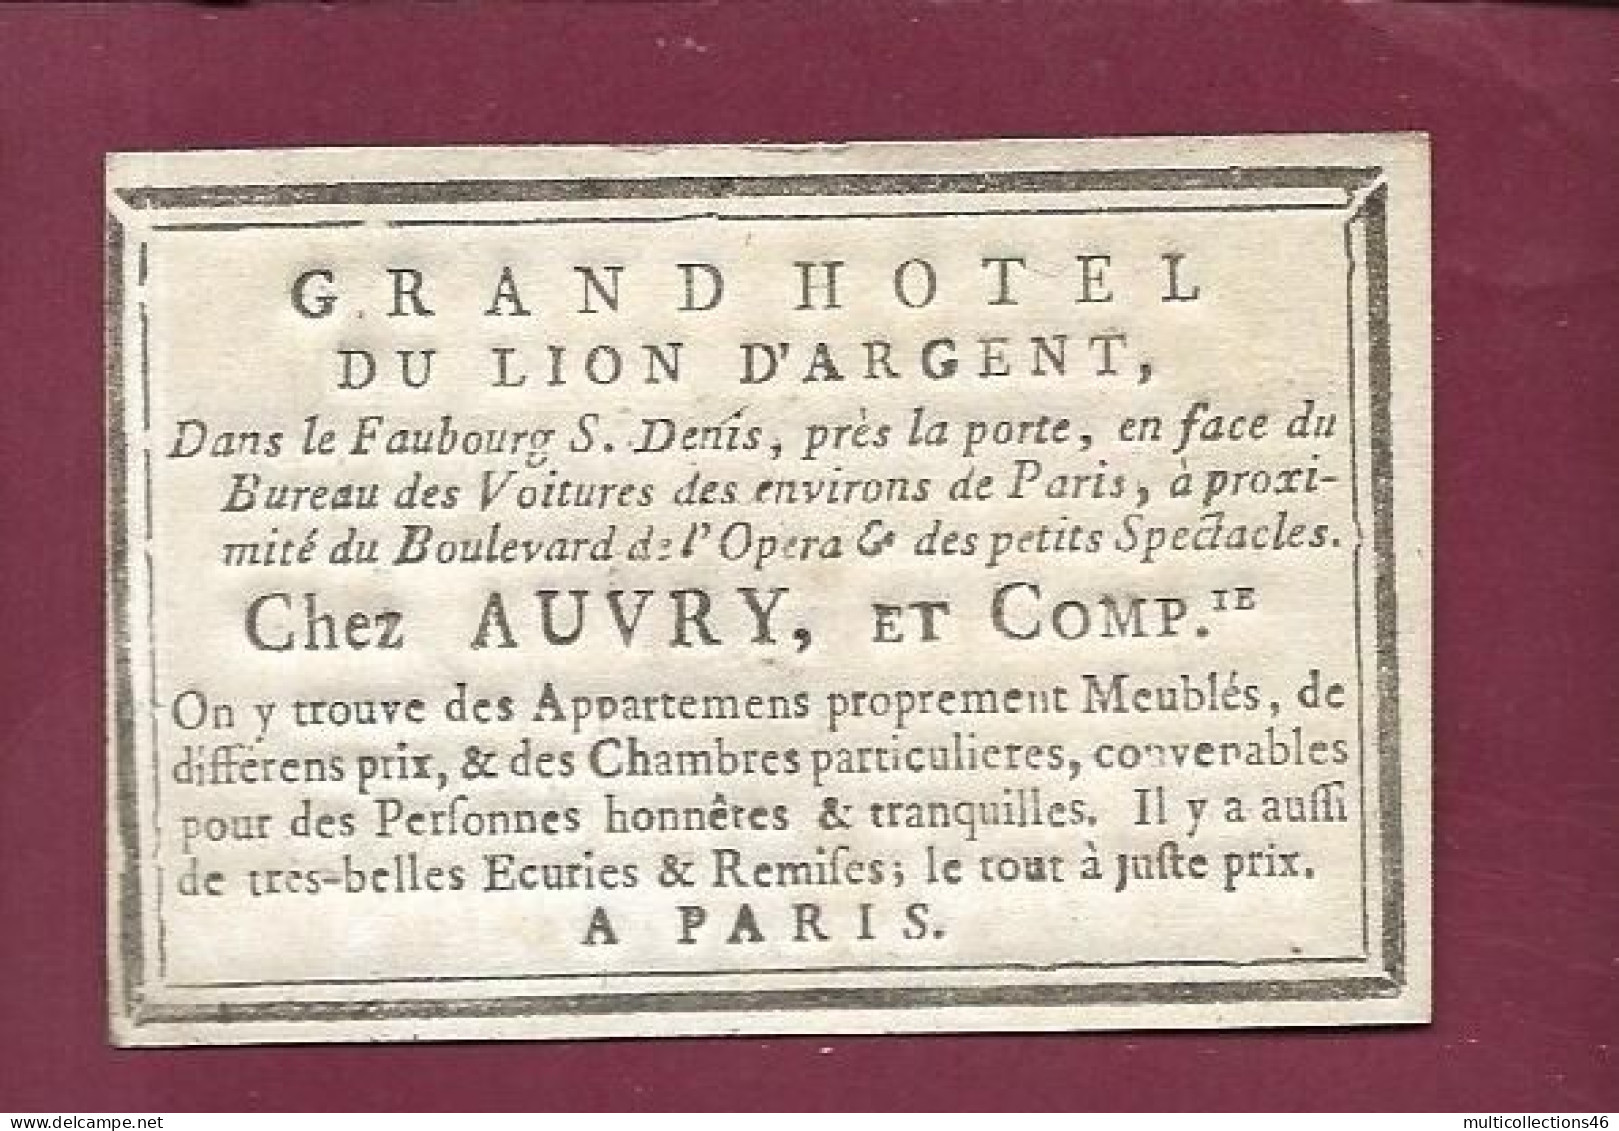 130524A - CARTE A JOUER ANCIENNE Carte De Visite Grand Hôtel Du Lion D'argent Chez AUVRY à PARIS - 8 De TREFLE - Kartenspiele (traditionell)